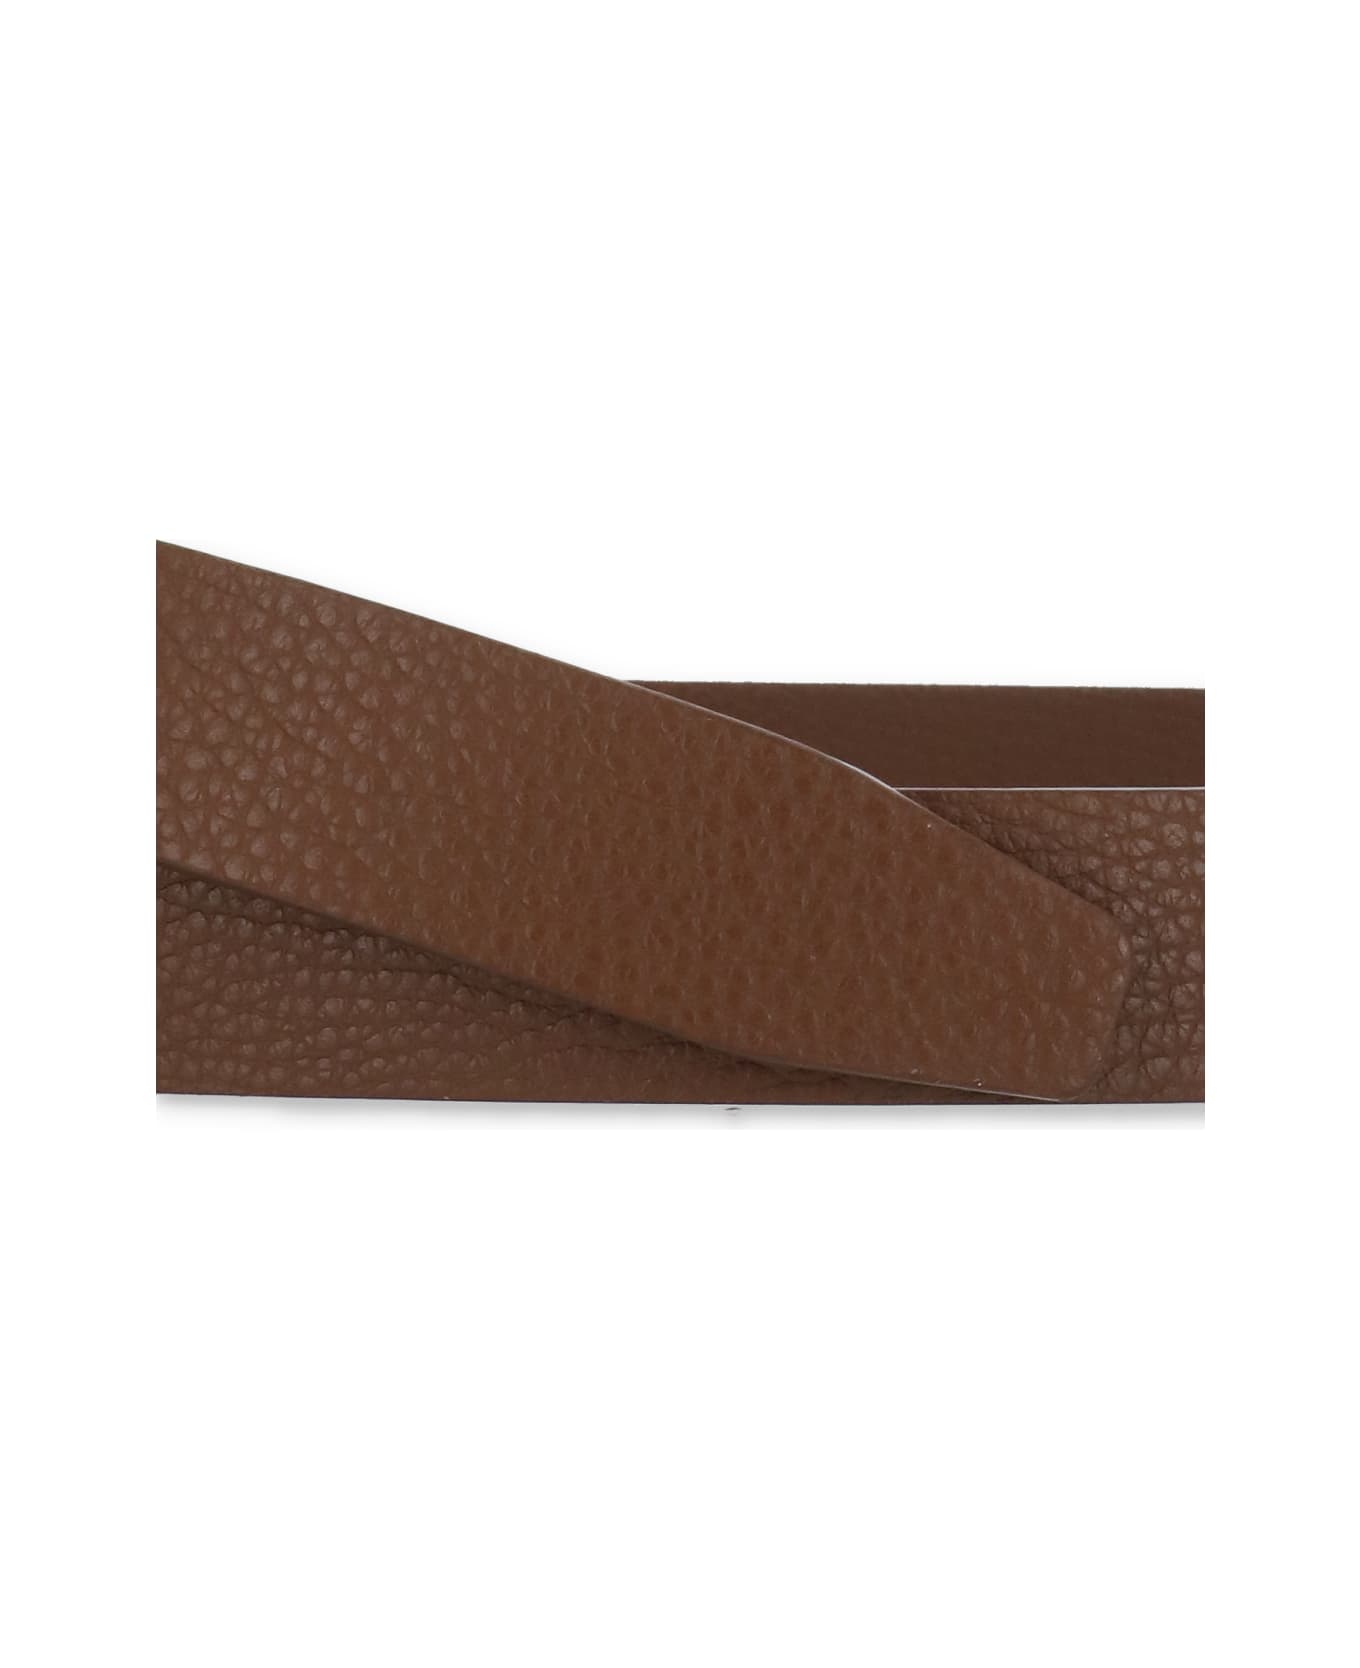 Orciani Leather Belt - Sigaro ベルト